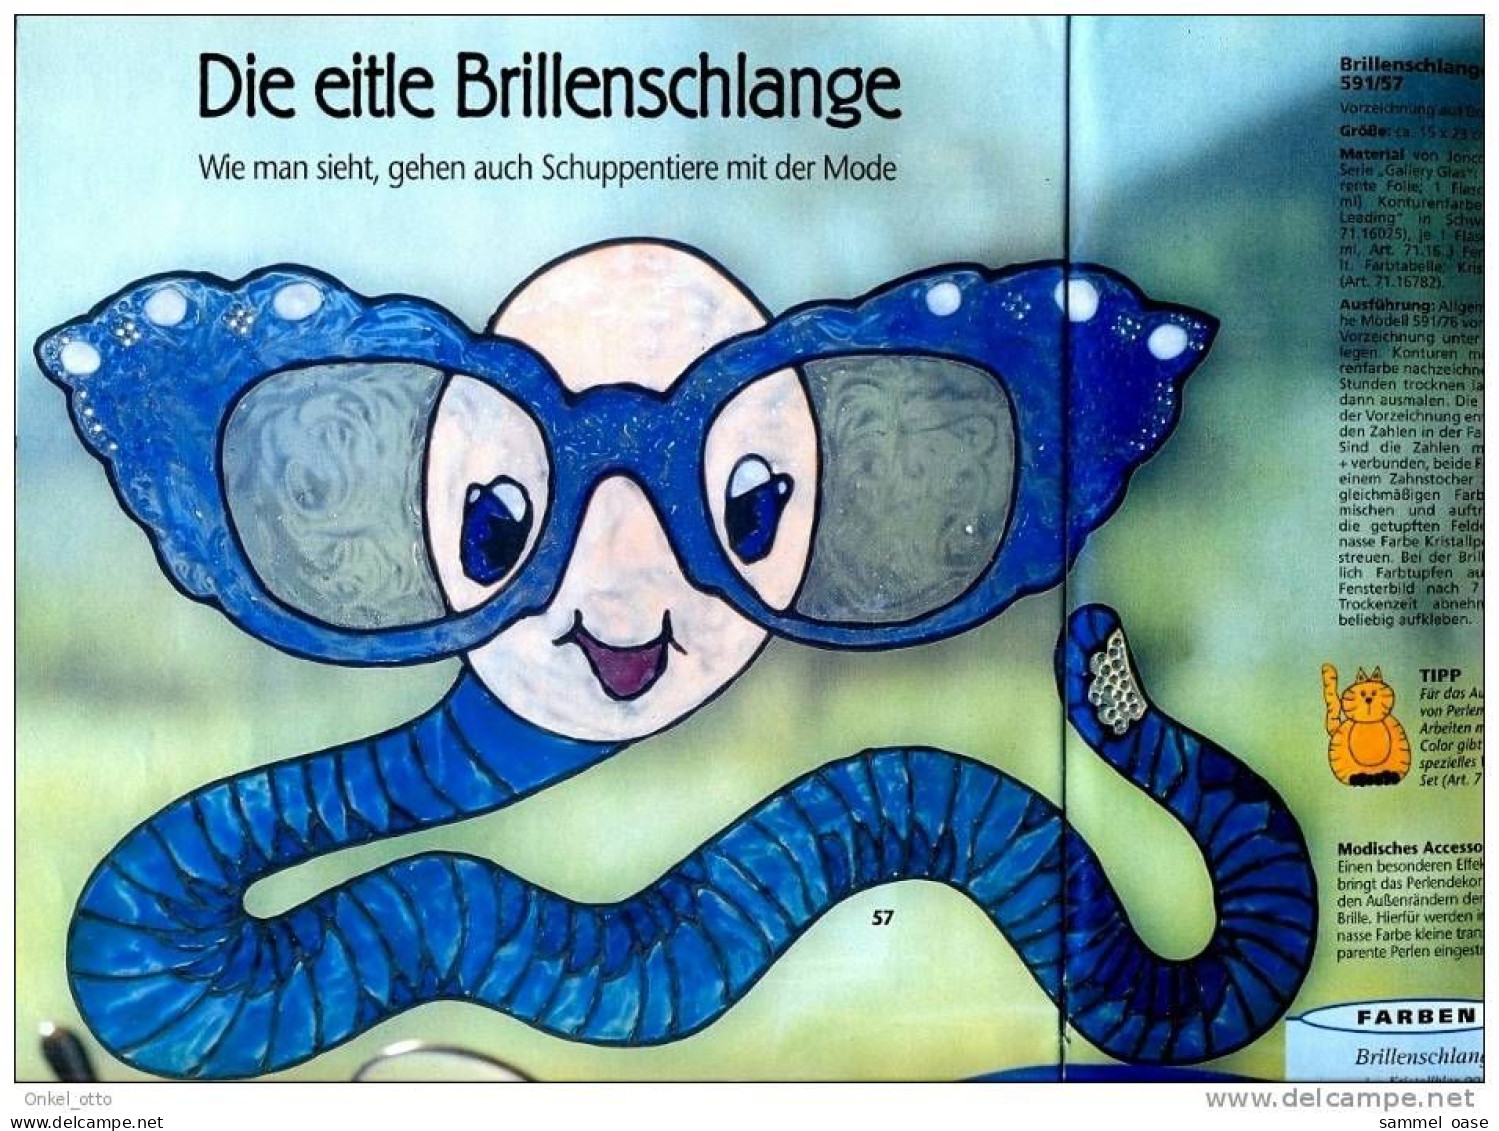 Zeitschrift - Window Color Tiermotive - Anna Spezial - 80 Gute Ideen - Von 2000 - Hobby & Verzamelen